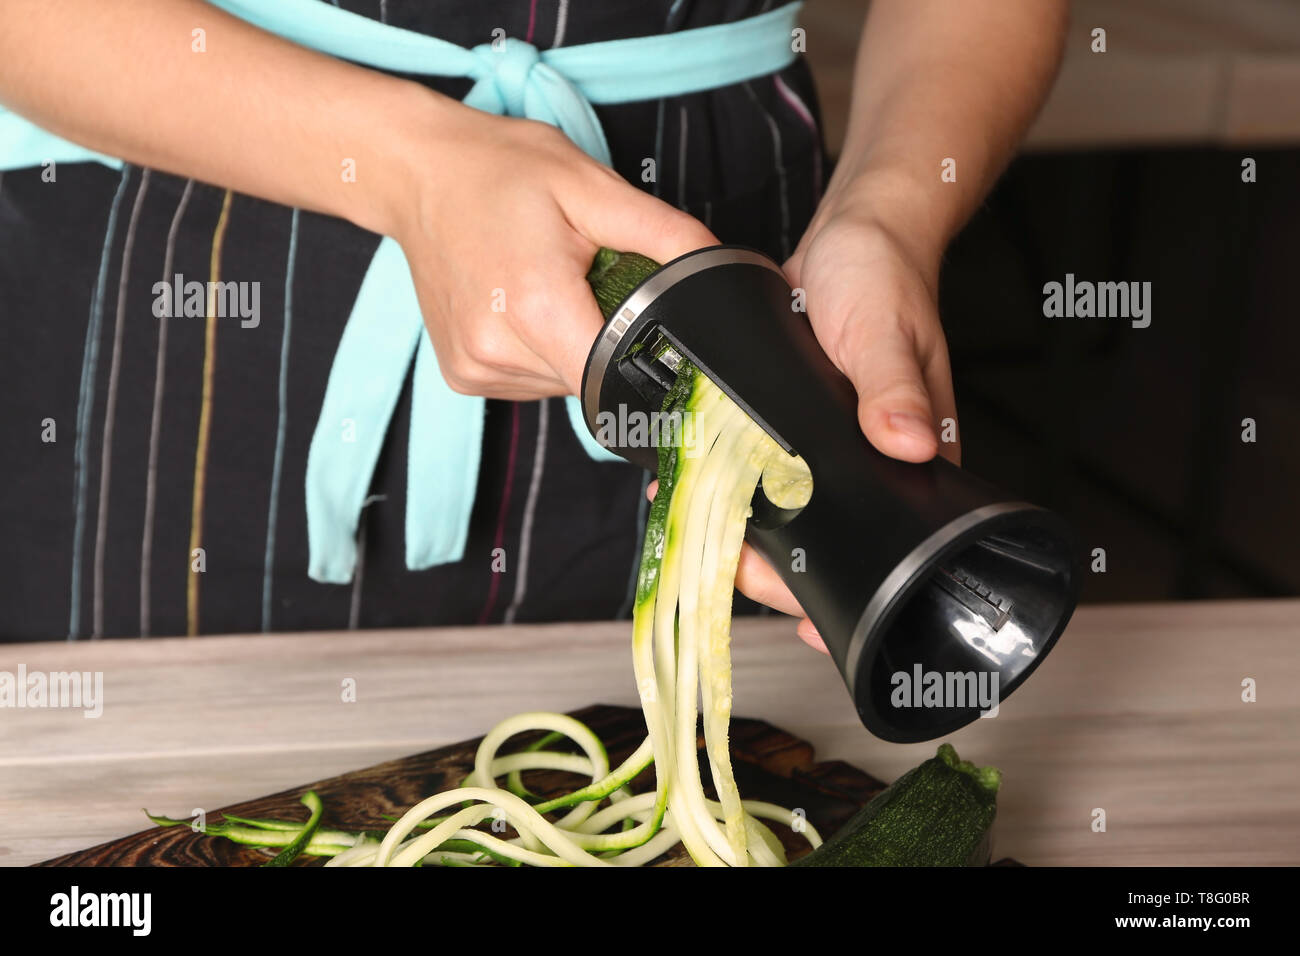 Woman making zucchini spaghetti, closeup Stock Photo